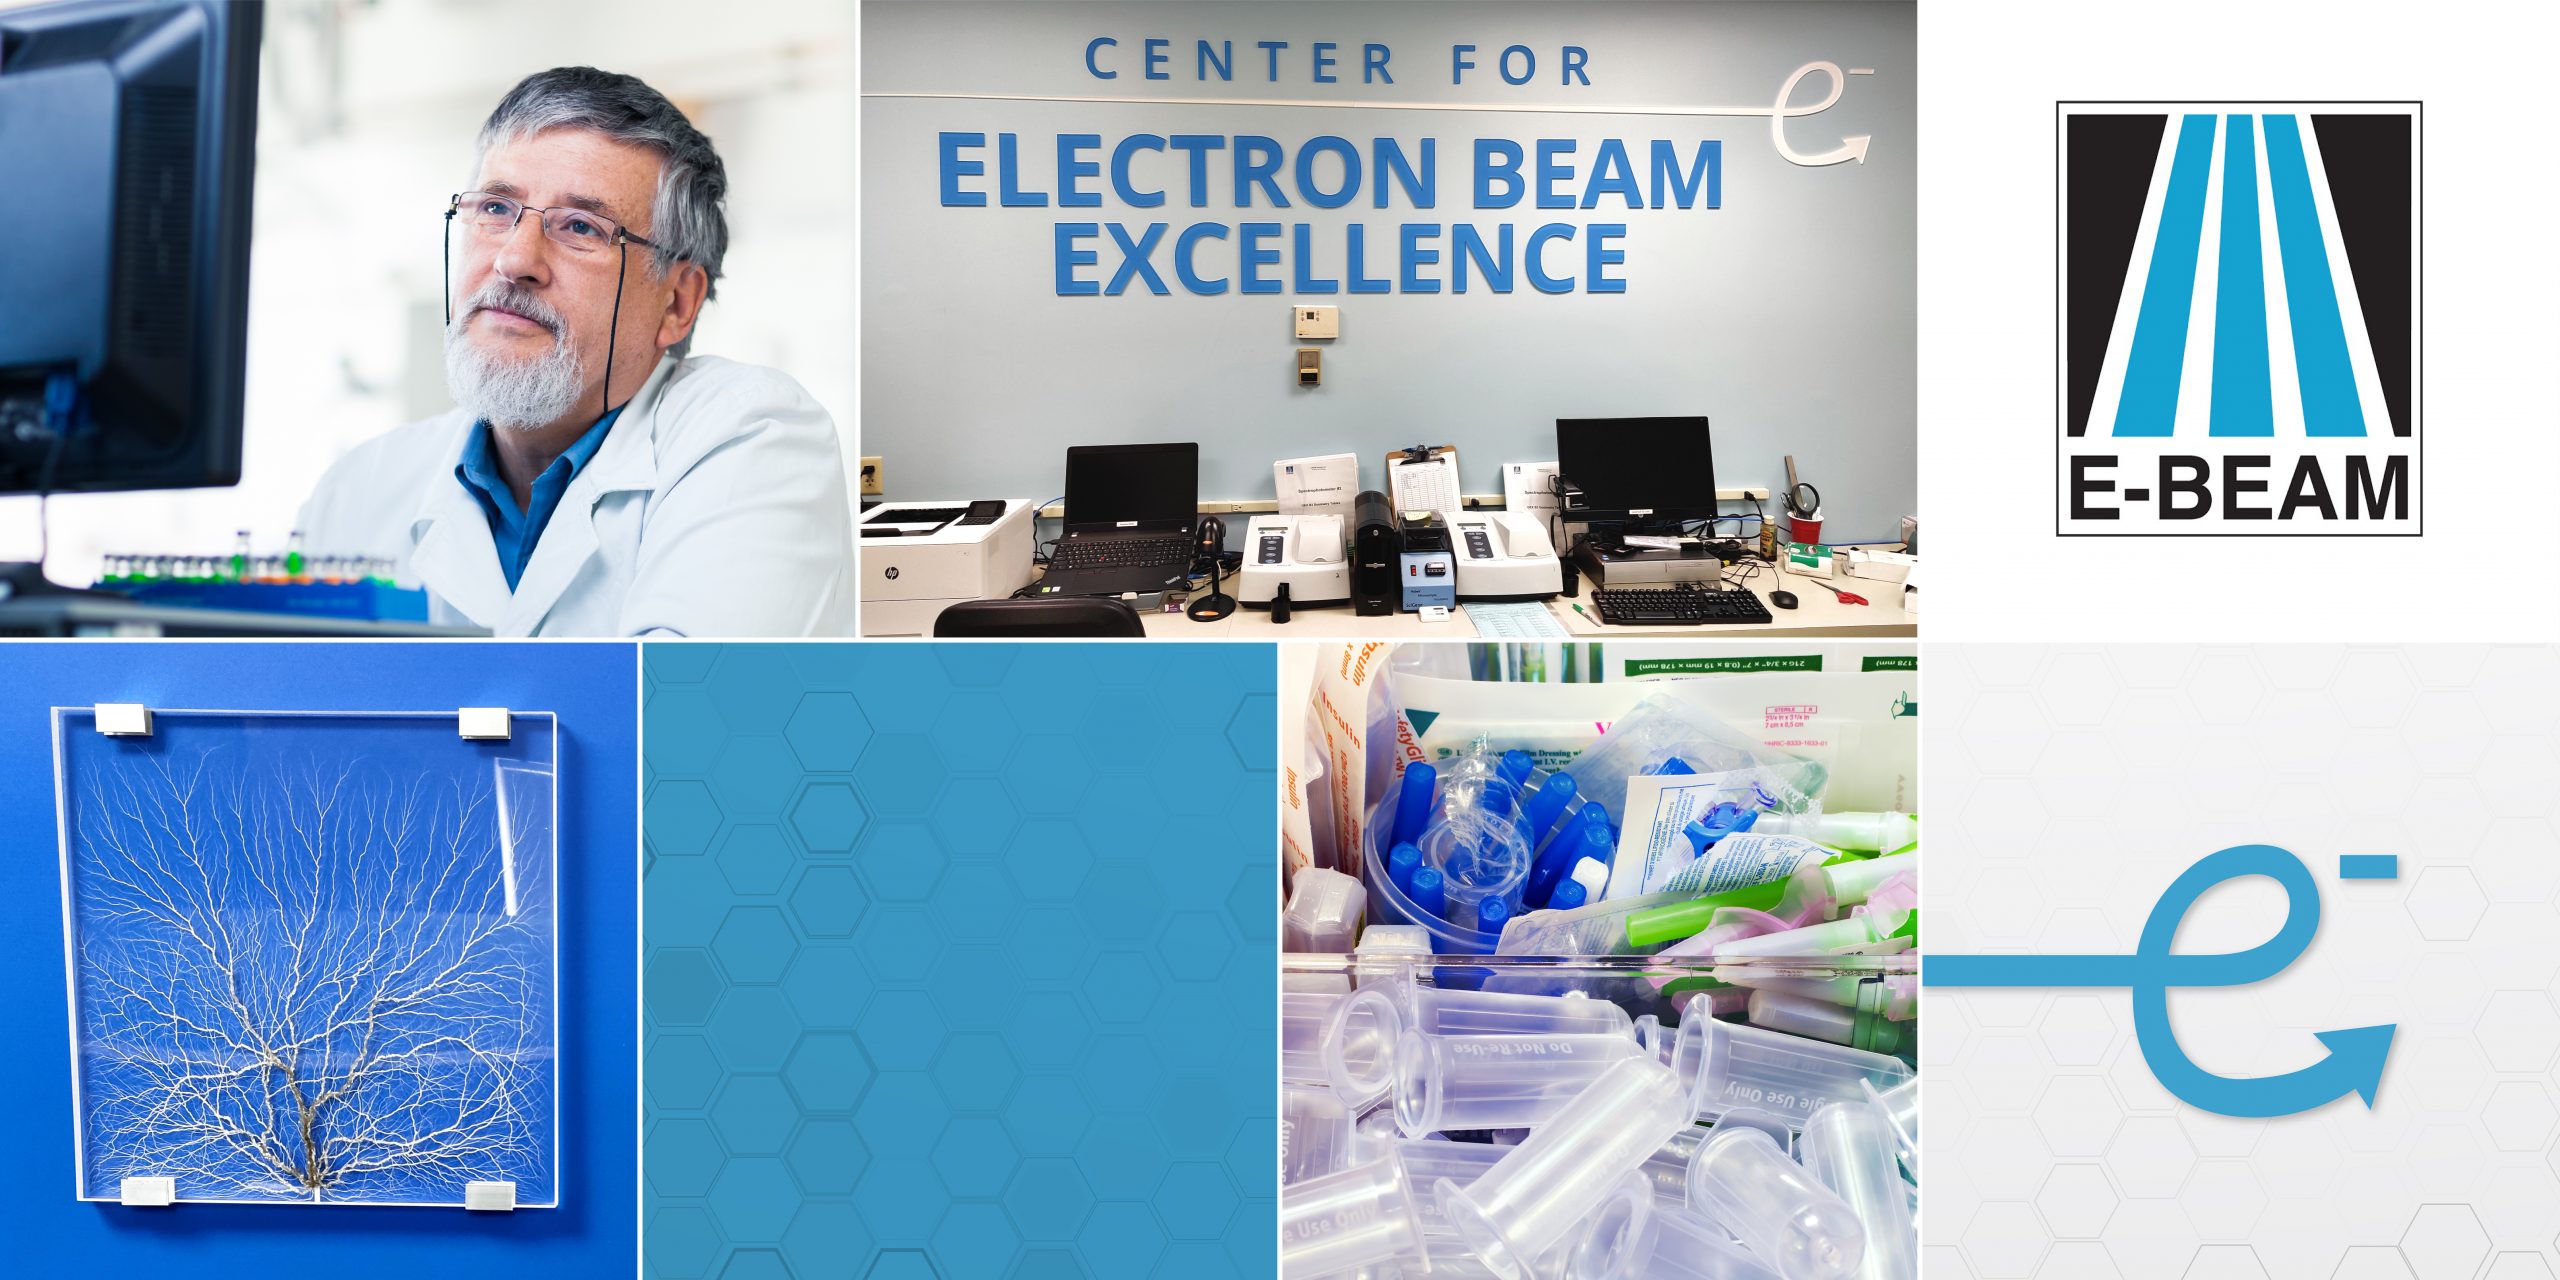 E-BEAM Center for Electron Beam Excellence